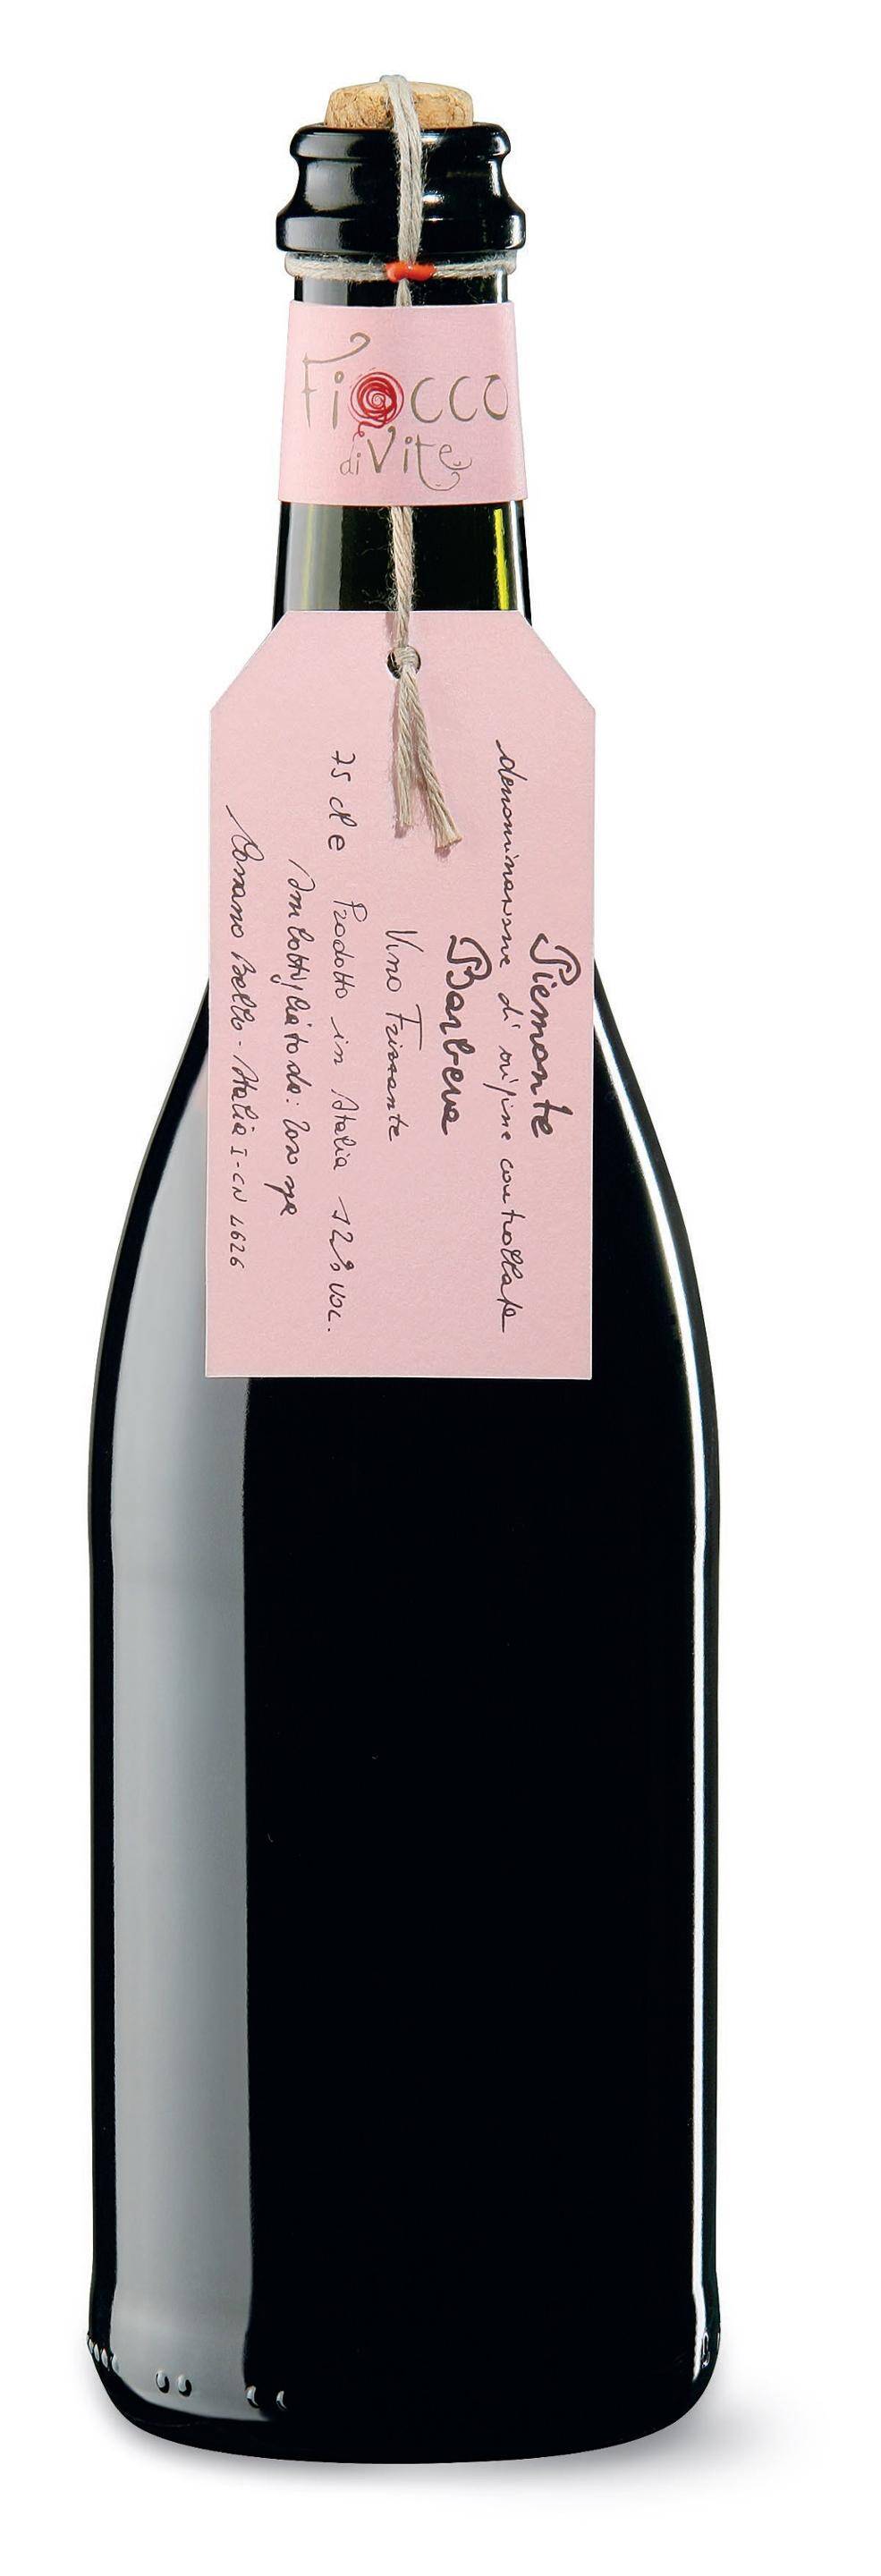 Wino włoskie Toso Fiocco Divite Barbera DOC frizzante 12% CW MUS 750ml/6